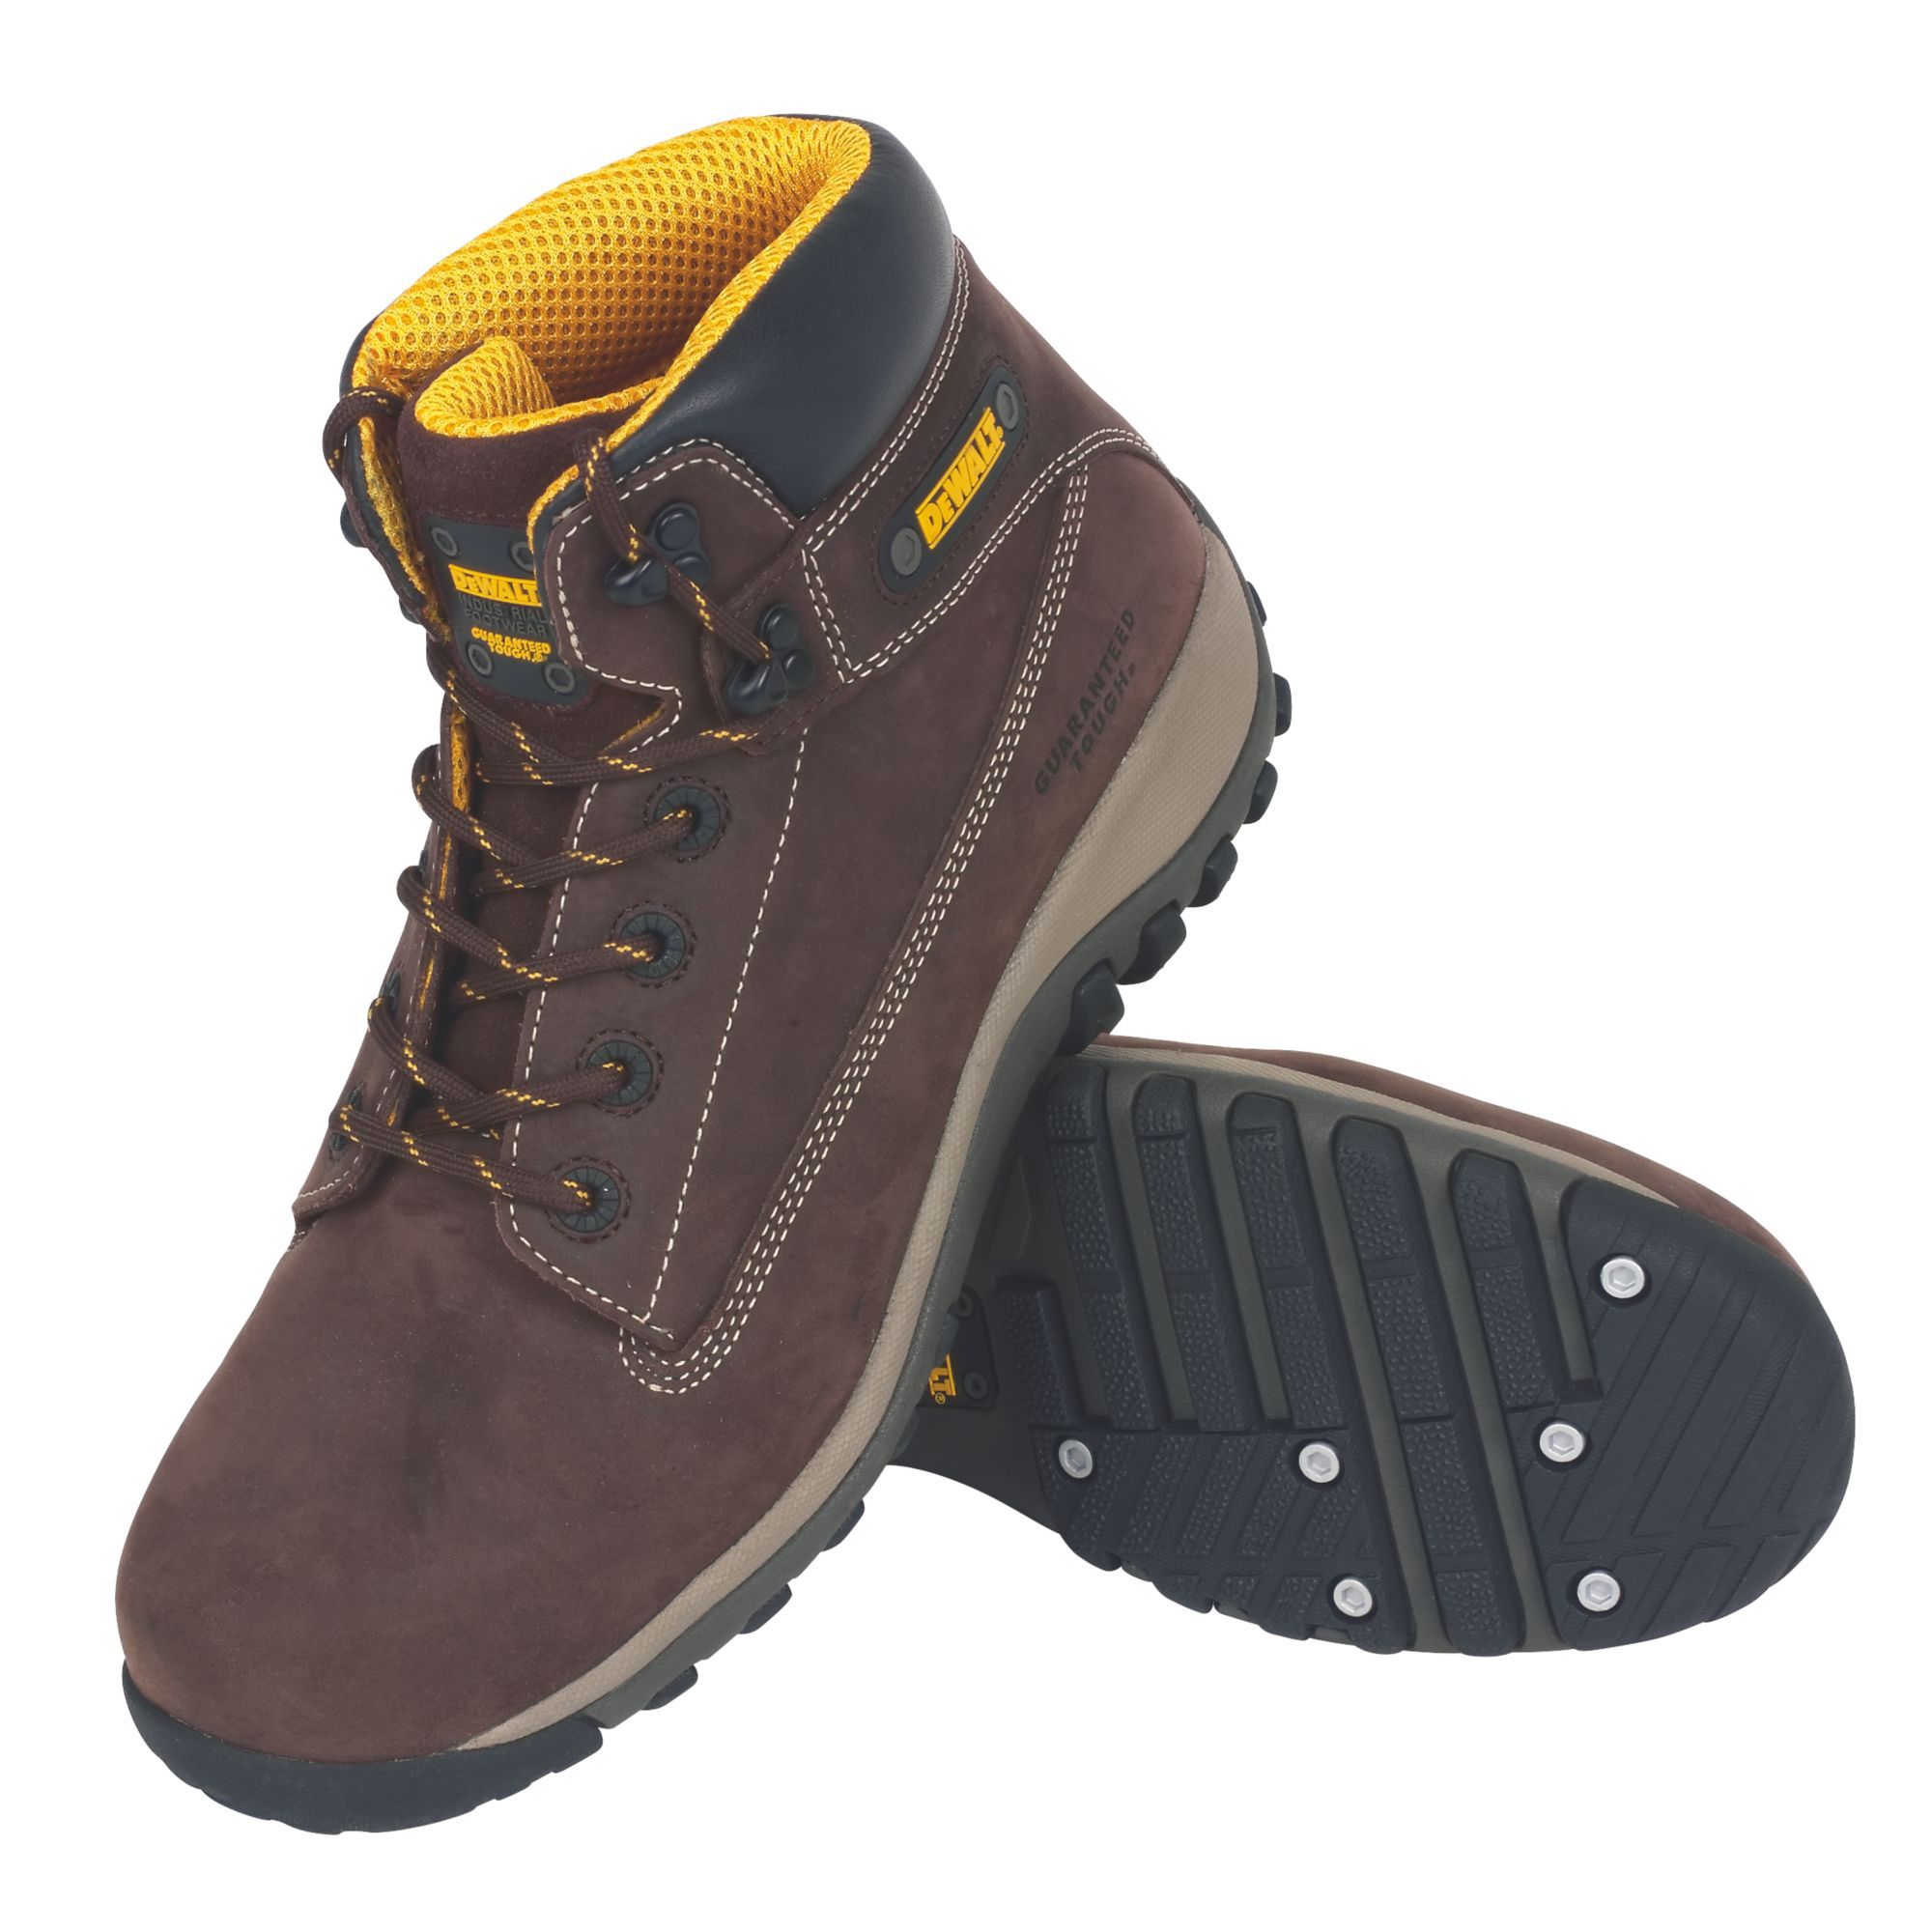 DeWalt Hammer Men's Brown Safety boots, Size 9